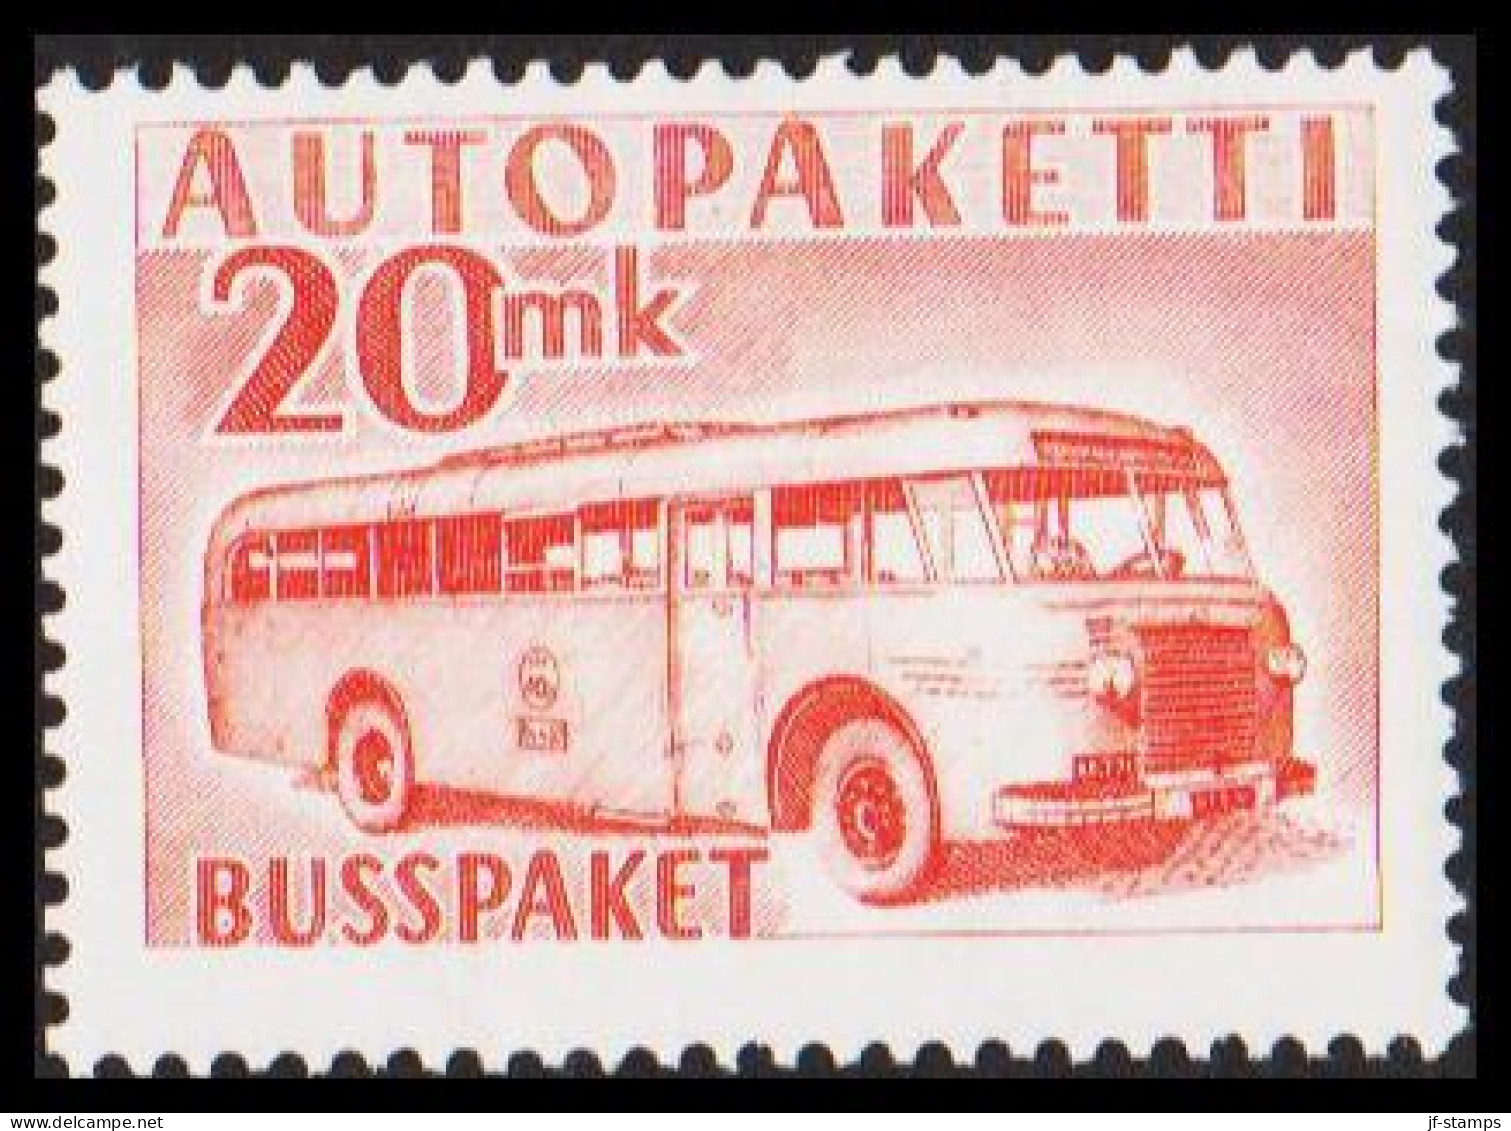 1952-1958. FINLAND. Mail Bus. 20 Mk. AUTOPAKETTI - BUSSPAKET Never Hinged. (Michel AP 7) - JF534382 - Bus Parcels / Colis Par Autobus / Pakjes Per Postbus